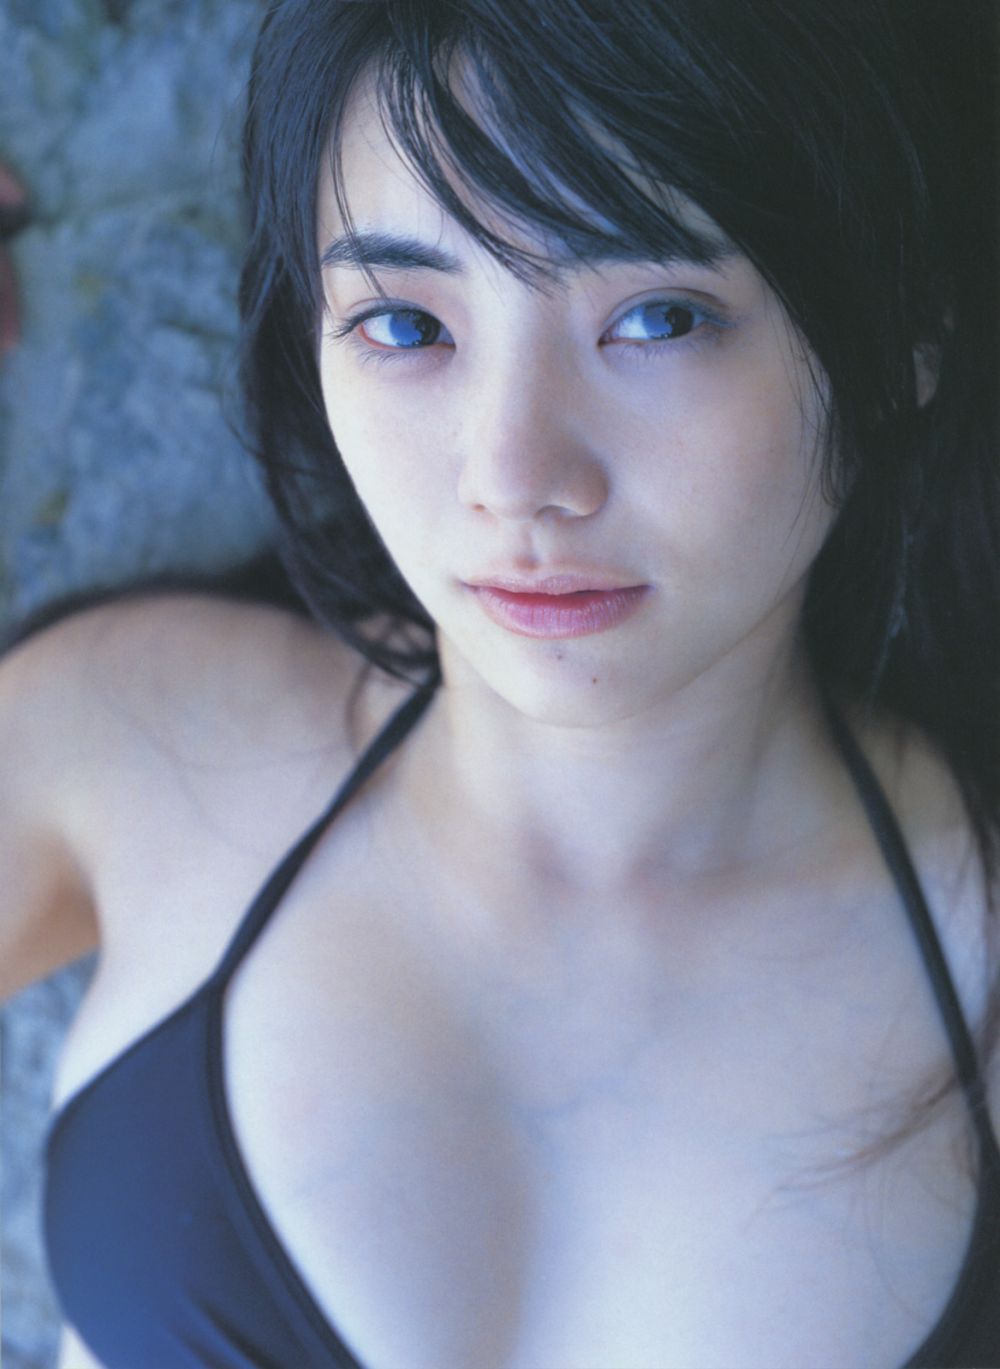 Kana Kurashina Sexy and Hottest Photos , Latest Pics